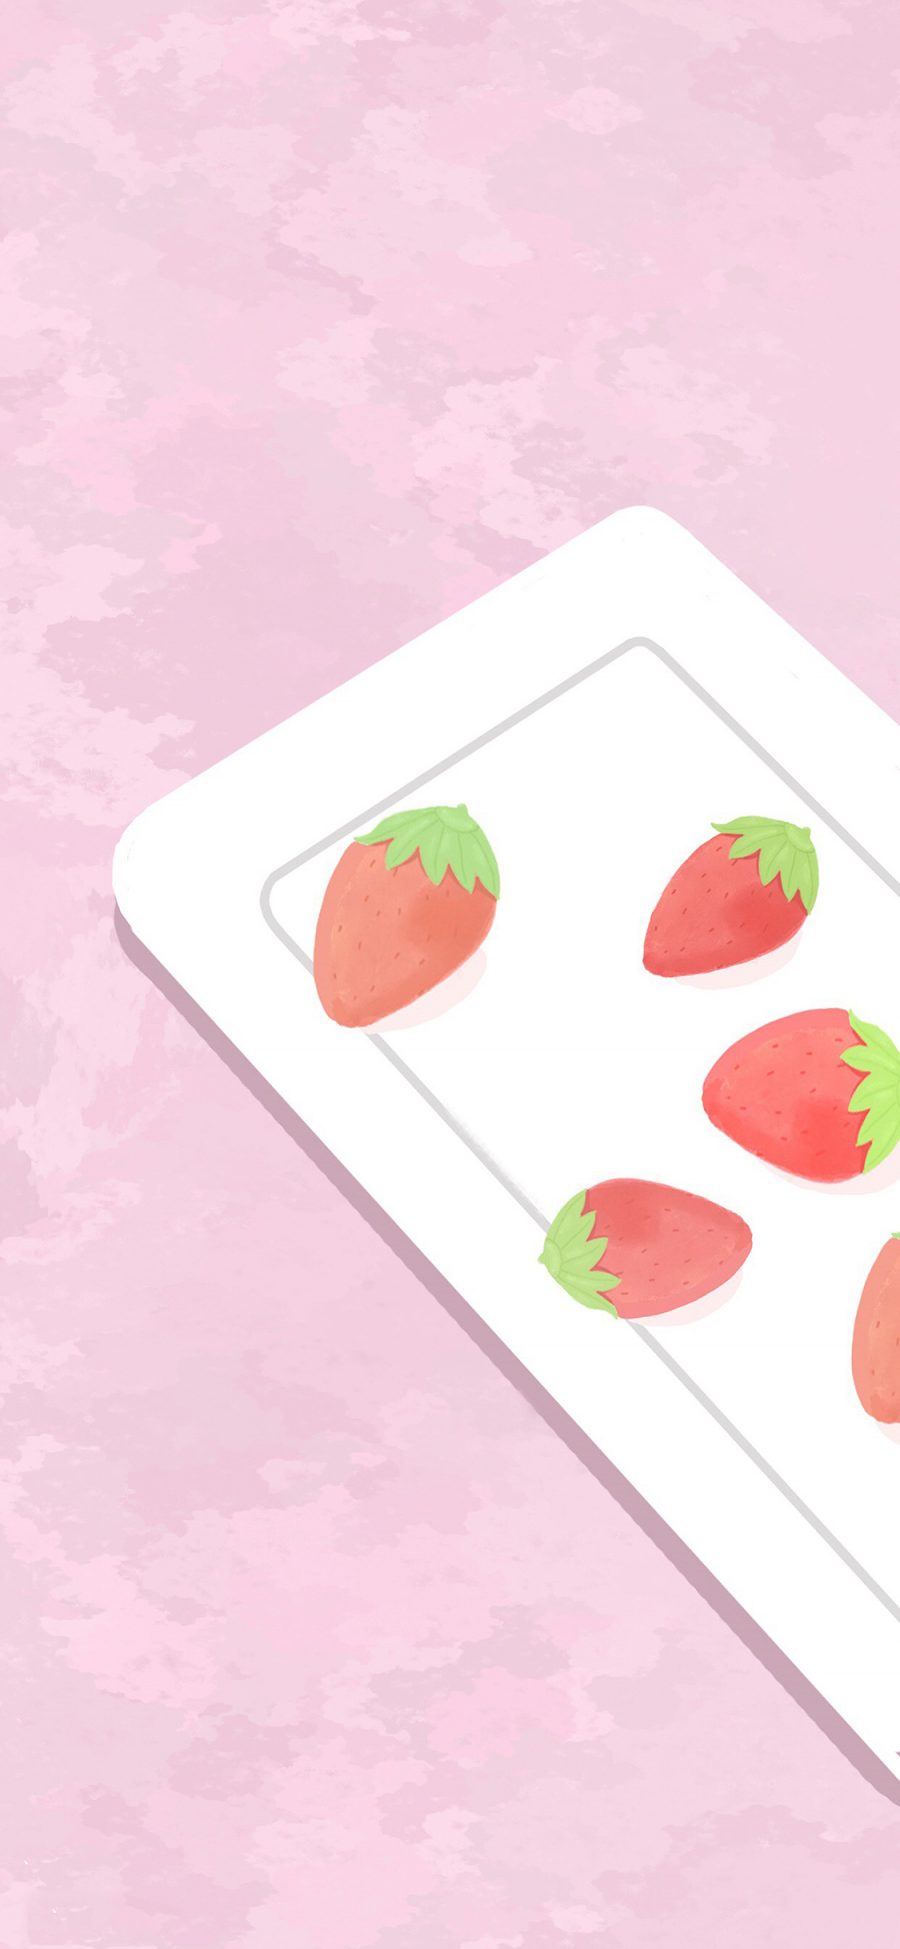 [2436×1125]草莓 简约 粉红 插画 苹果手机动漫壁纸图片